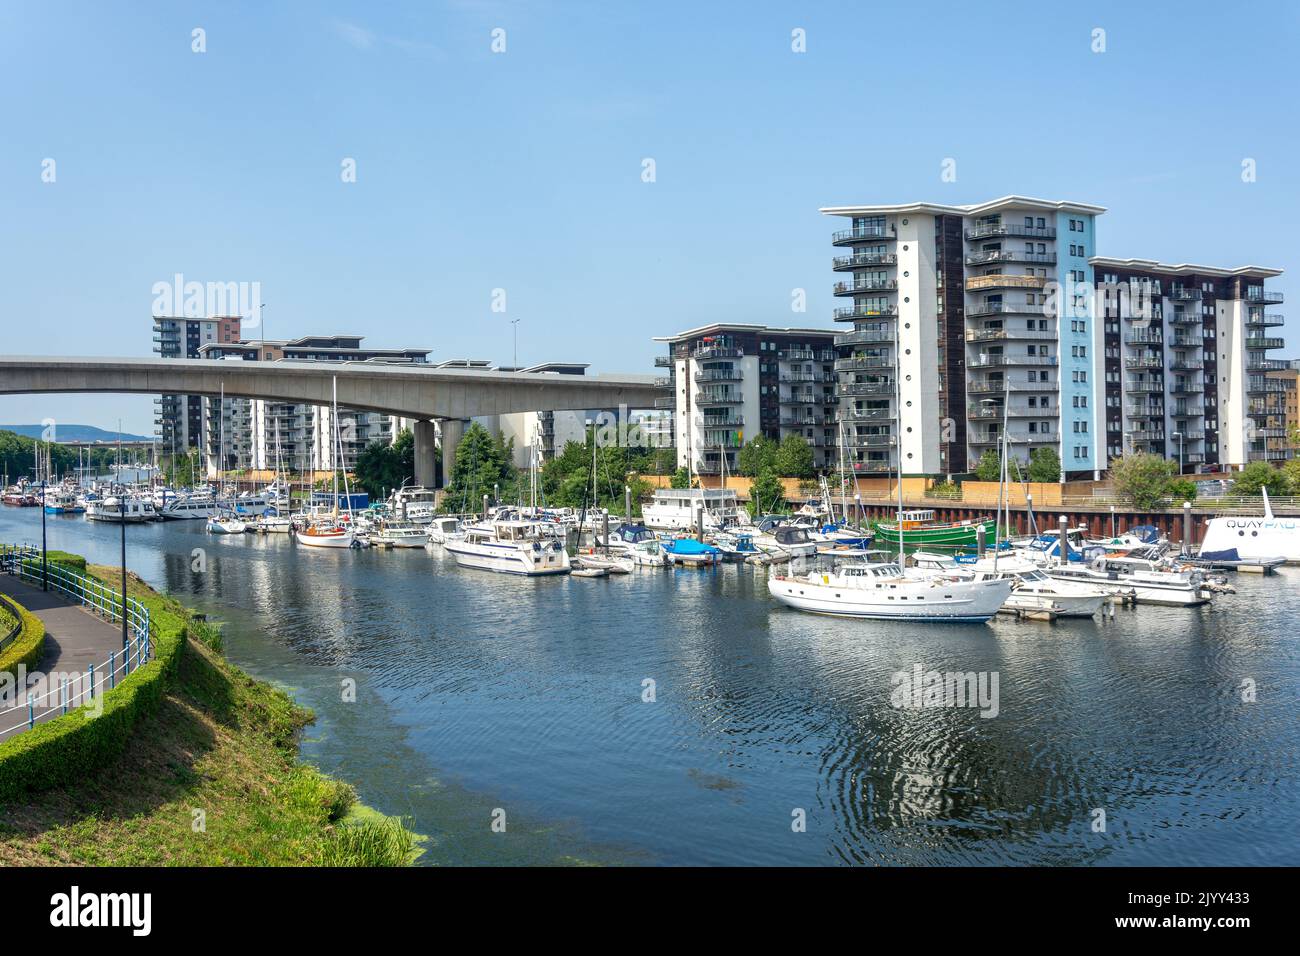 Cardiff Marina, City of Cardiff (Caerdydd), Wales (Cymru), United Kingdom Stock Photo